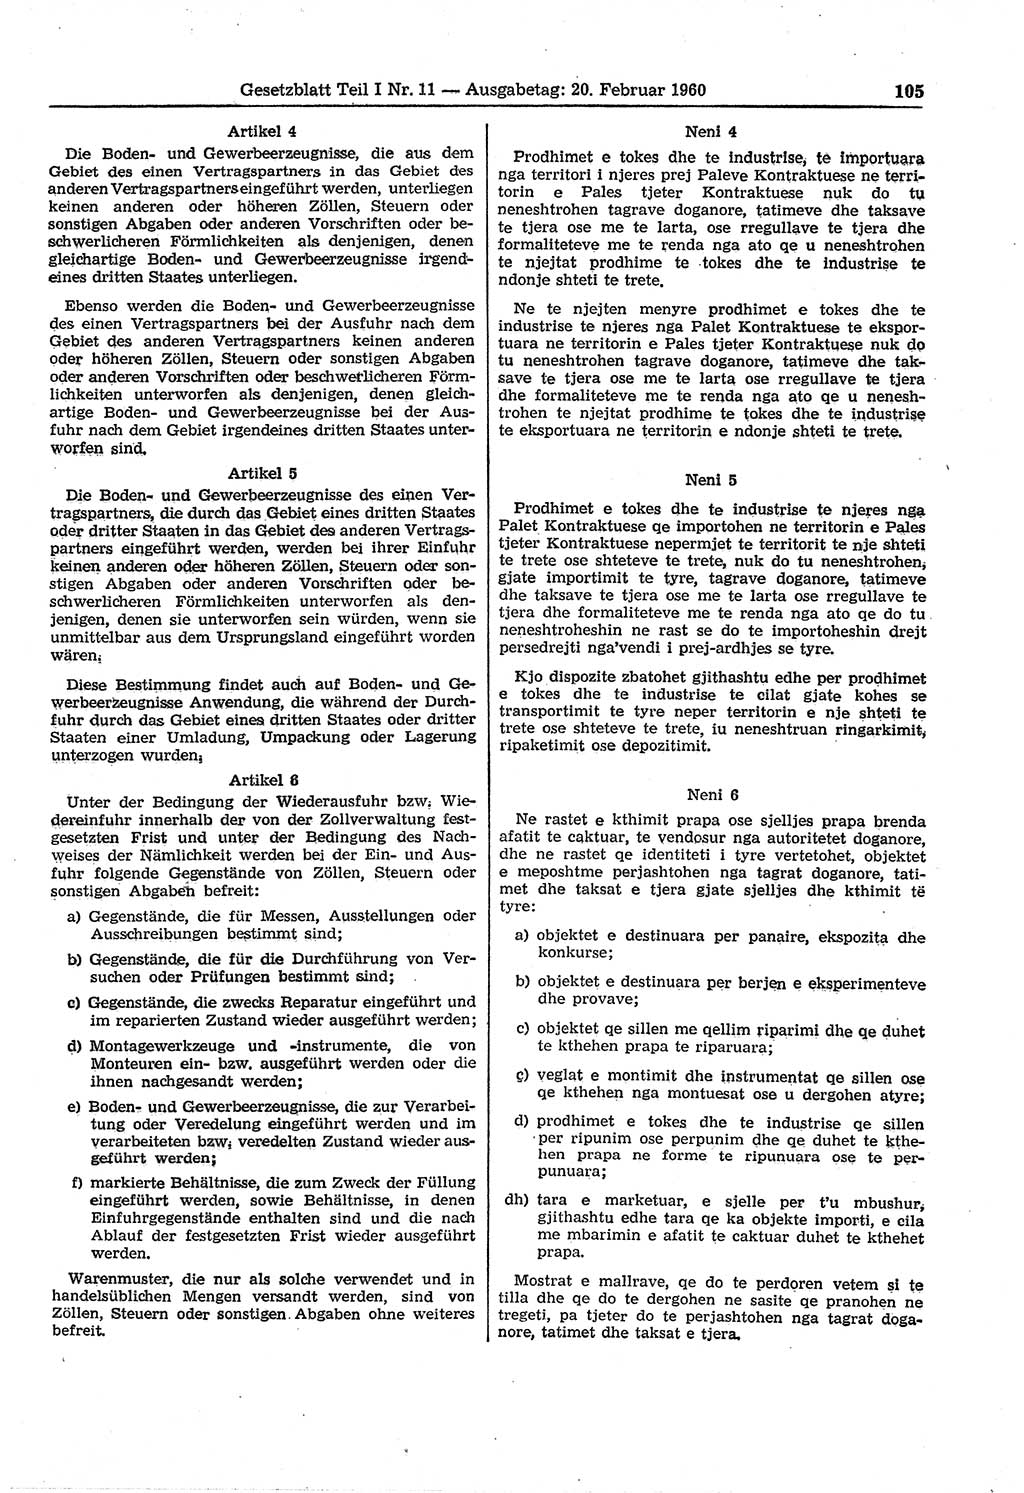 Gesetzblatt (GBl.) der Deutschen Demokratischen Republik (DDR) Teil Ⅰ 1960, Seite 105 (GBl. DDR Ⅰ 1960, S. 105)